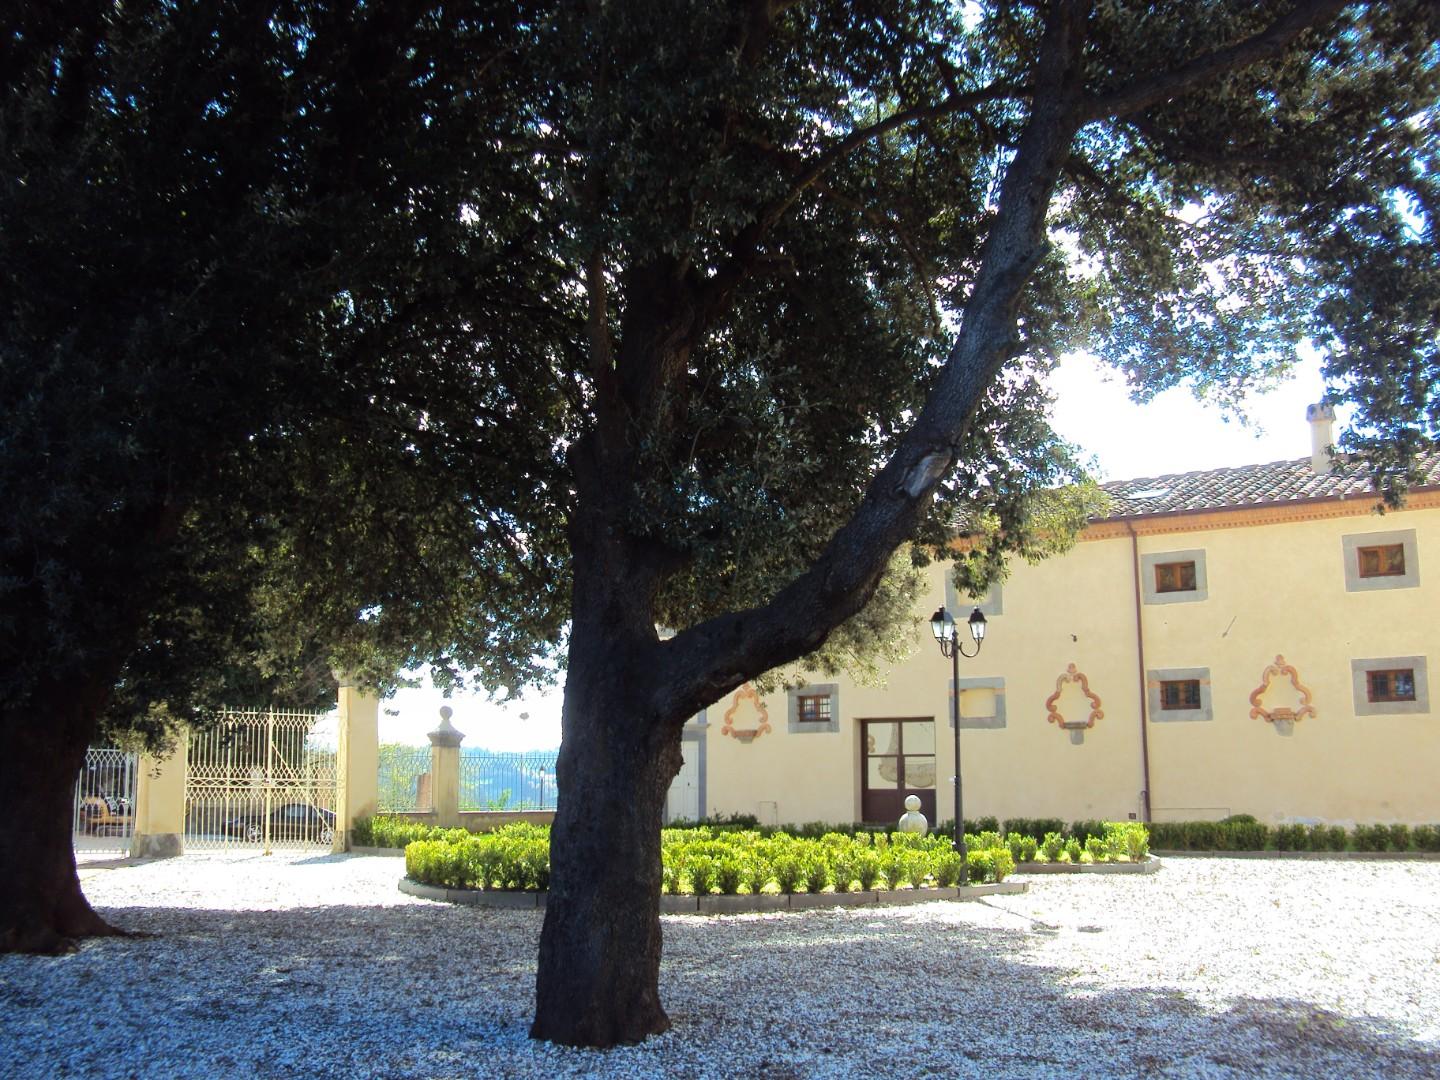 Villetta a schiera angolare in vendita a Casciana Terme Lari